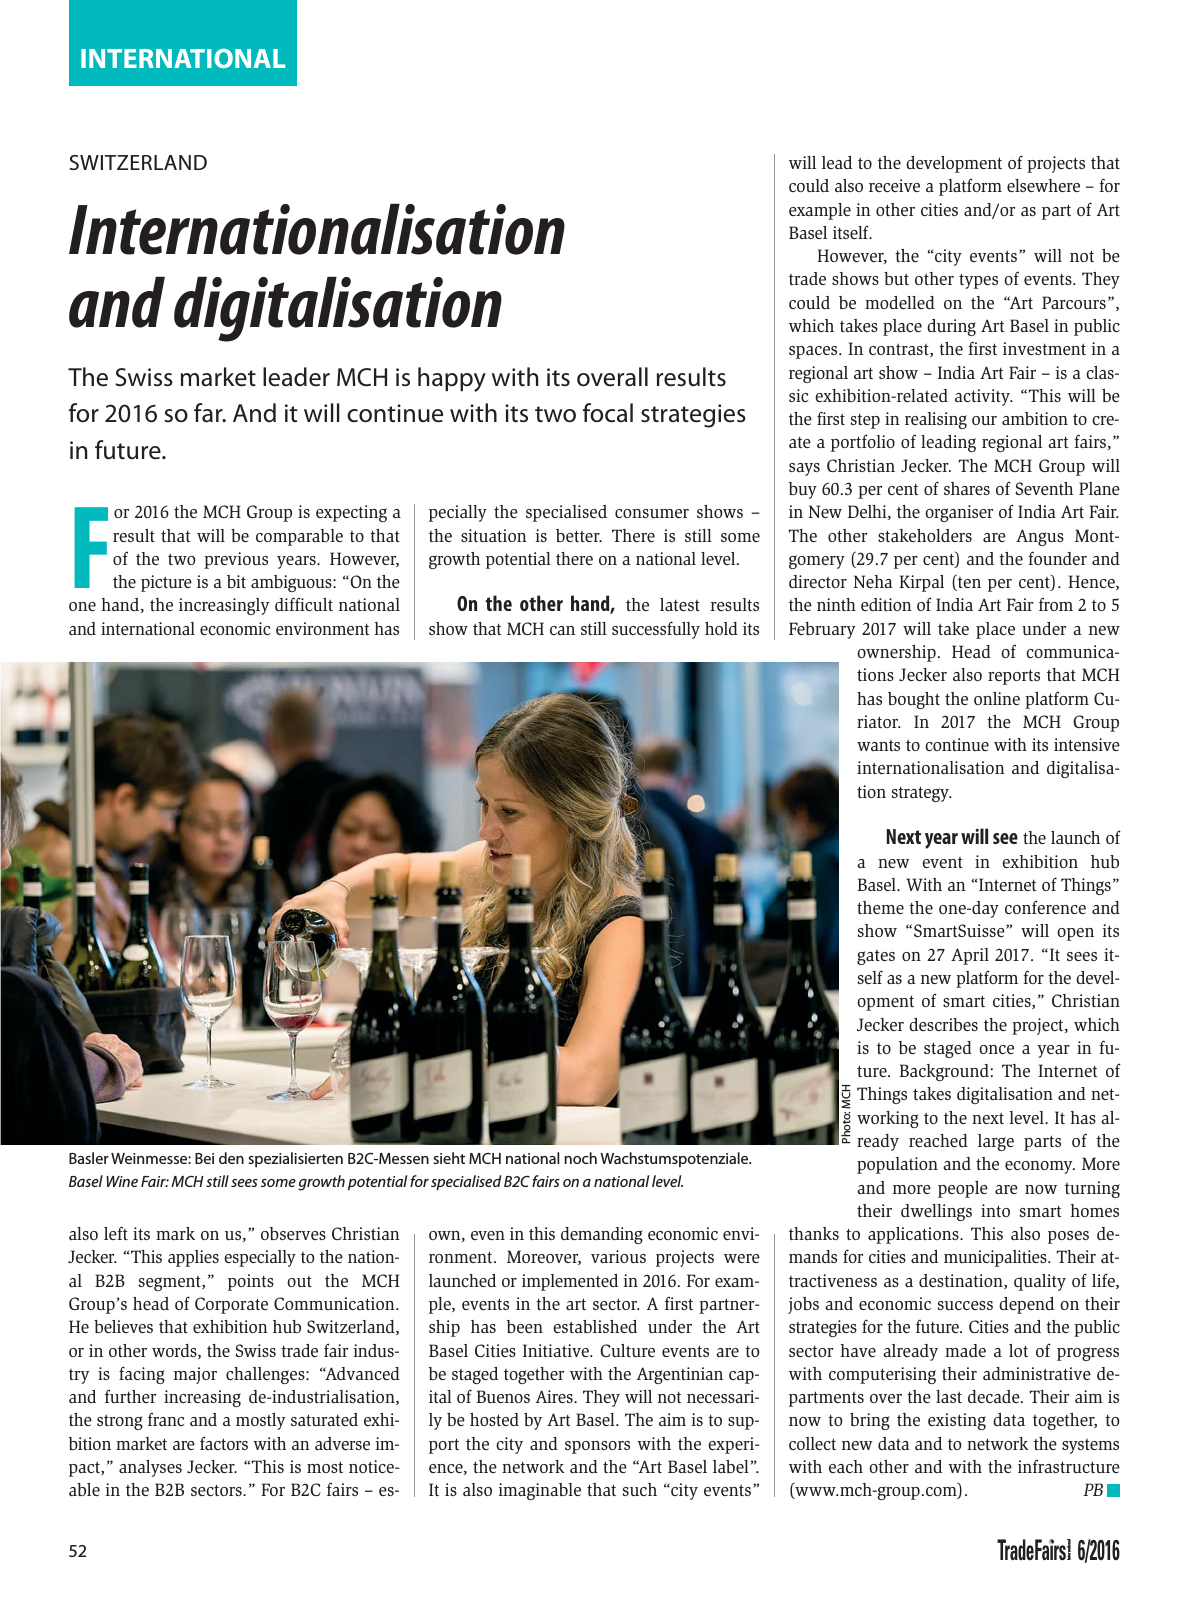 Vorschau TFI Trade-Fairs-International 06/2016 Seite 52